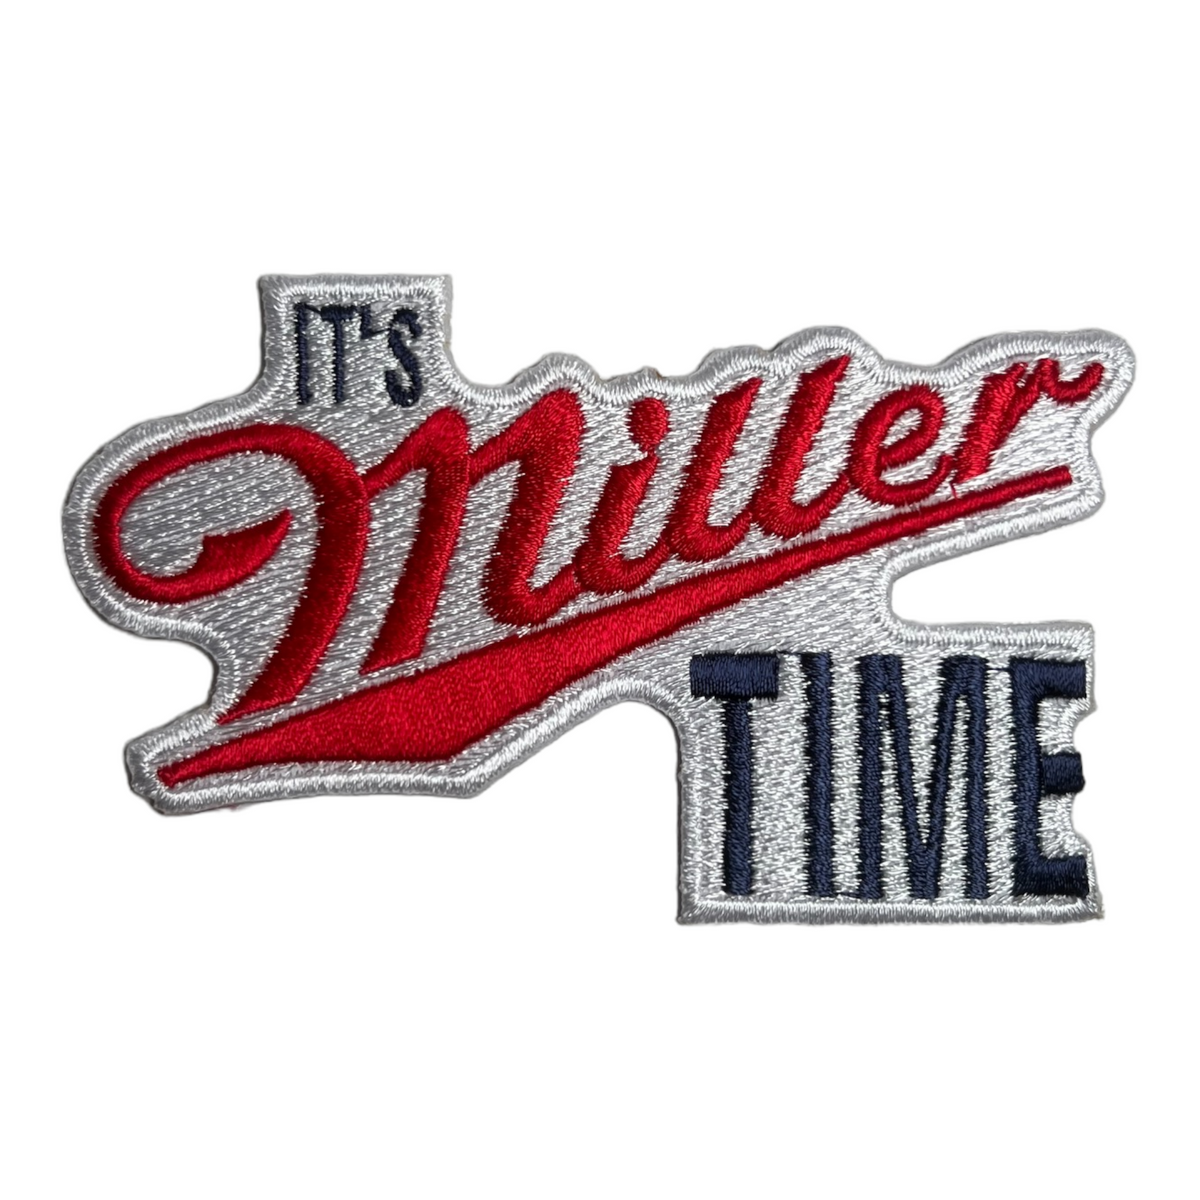 It's Miller Time – BourbonBackHatCo